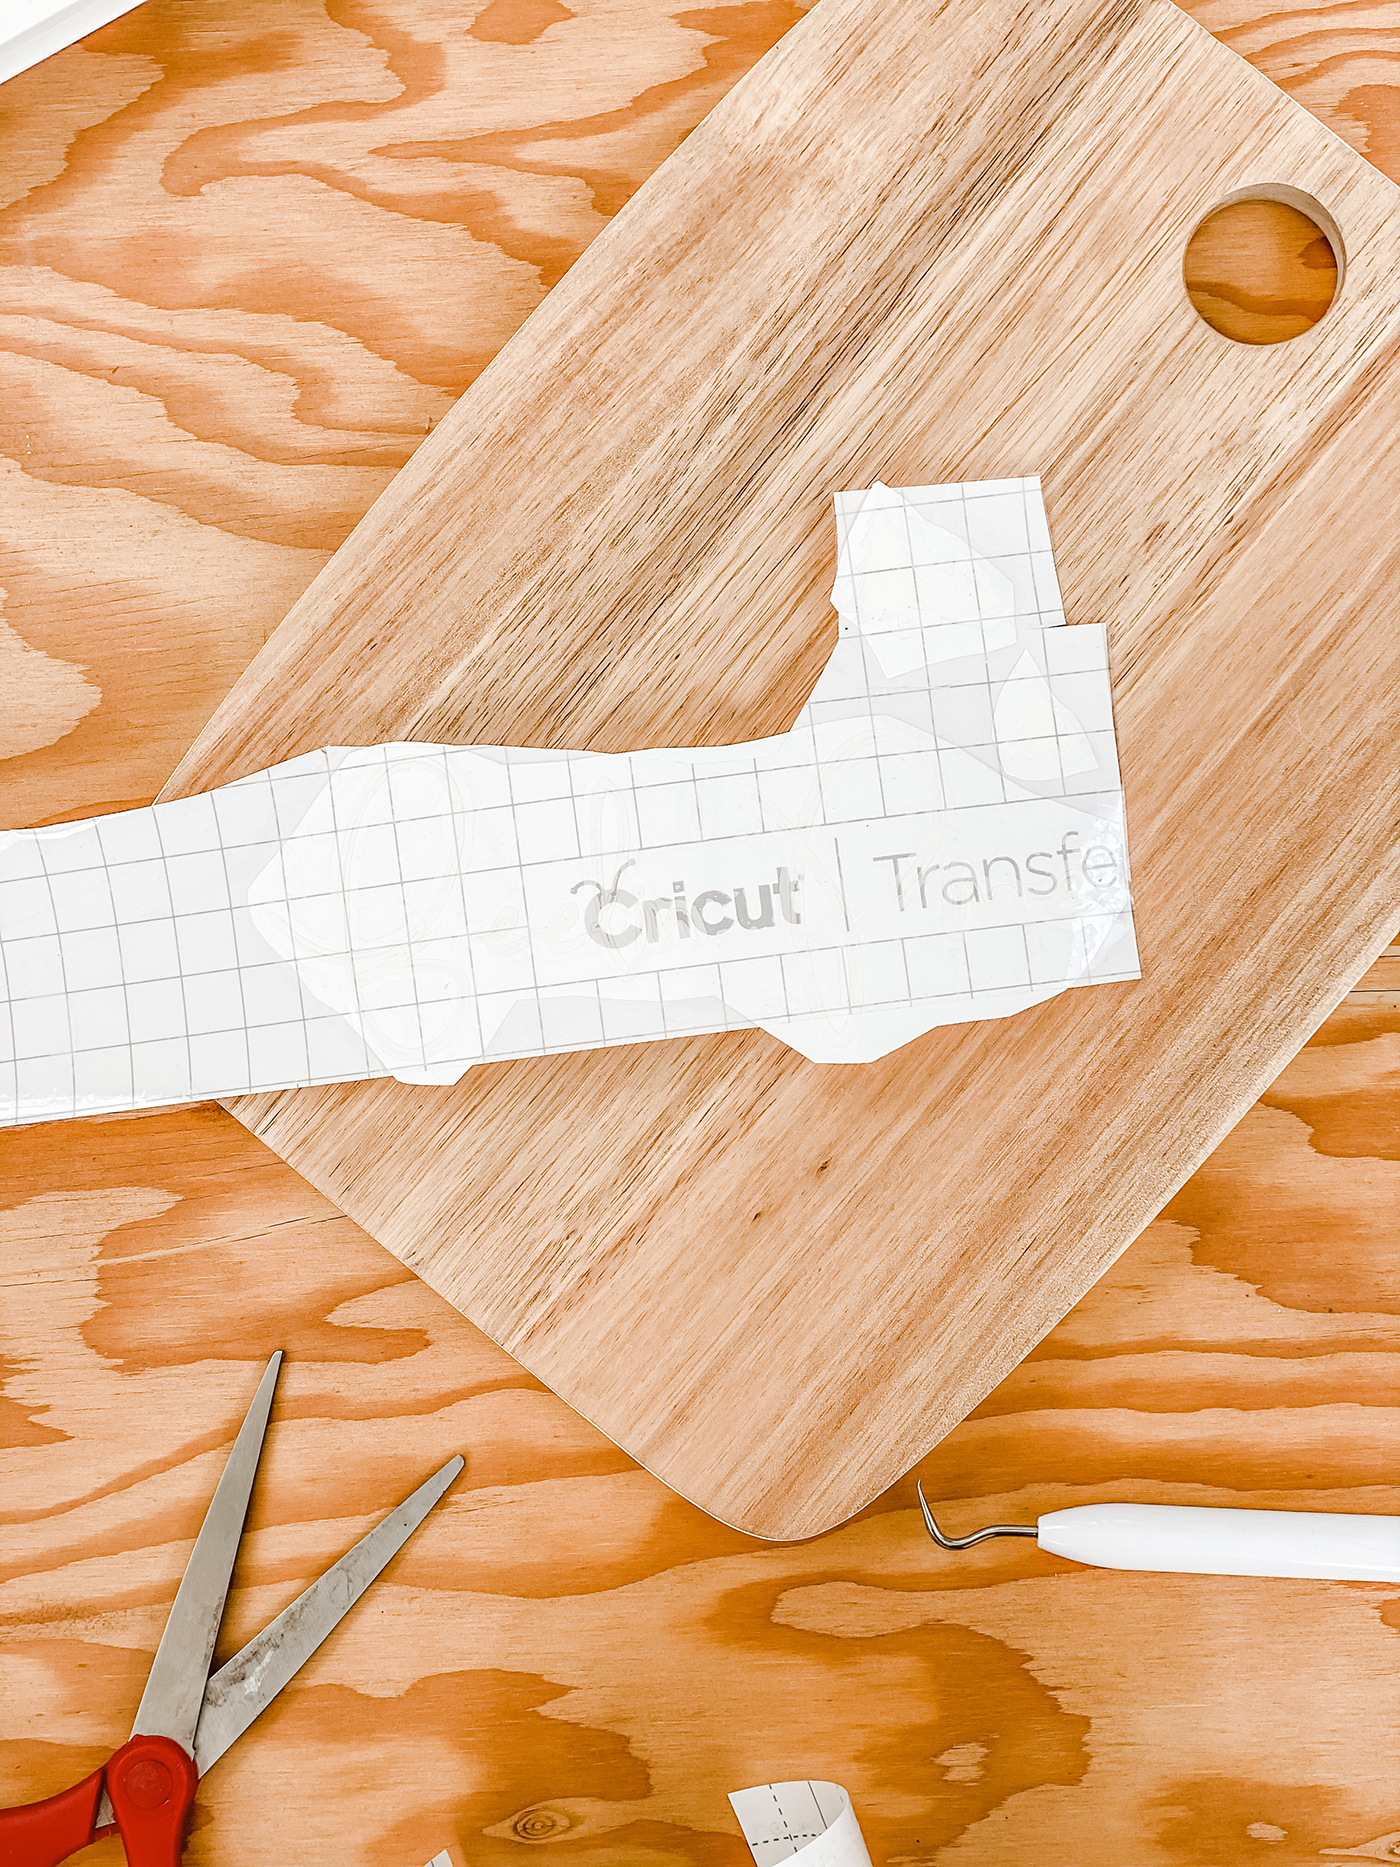 DIY Fall Cutting Board with a Cricut